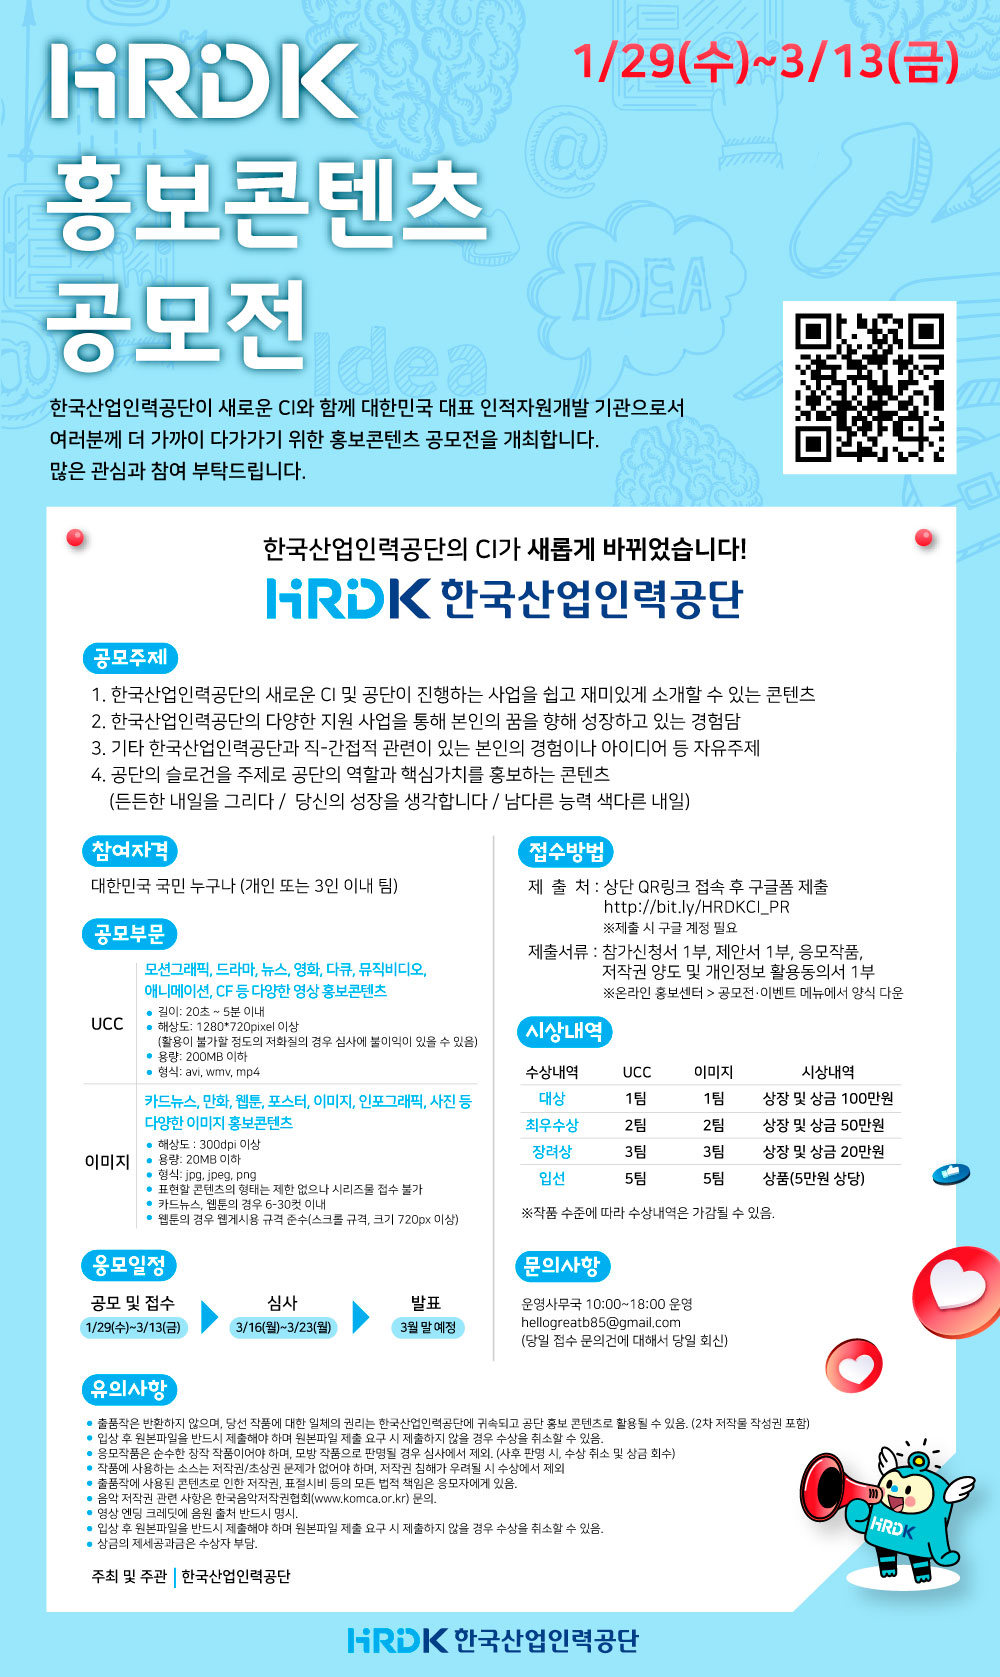 한국산업인력공단 HRDK NEW CI 홍보콘텐츠 공모전